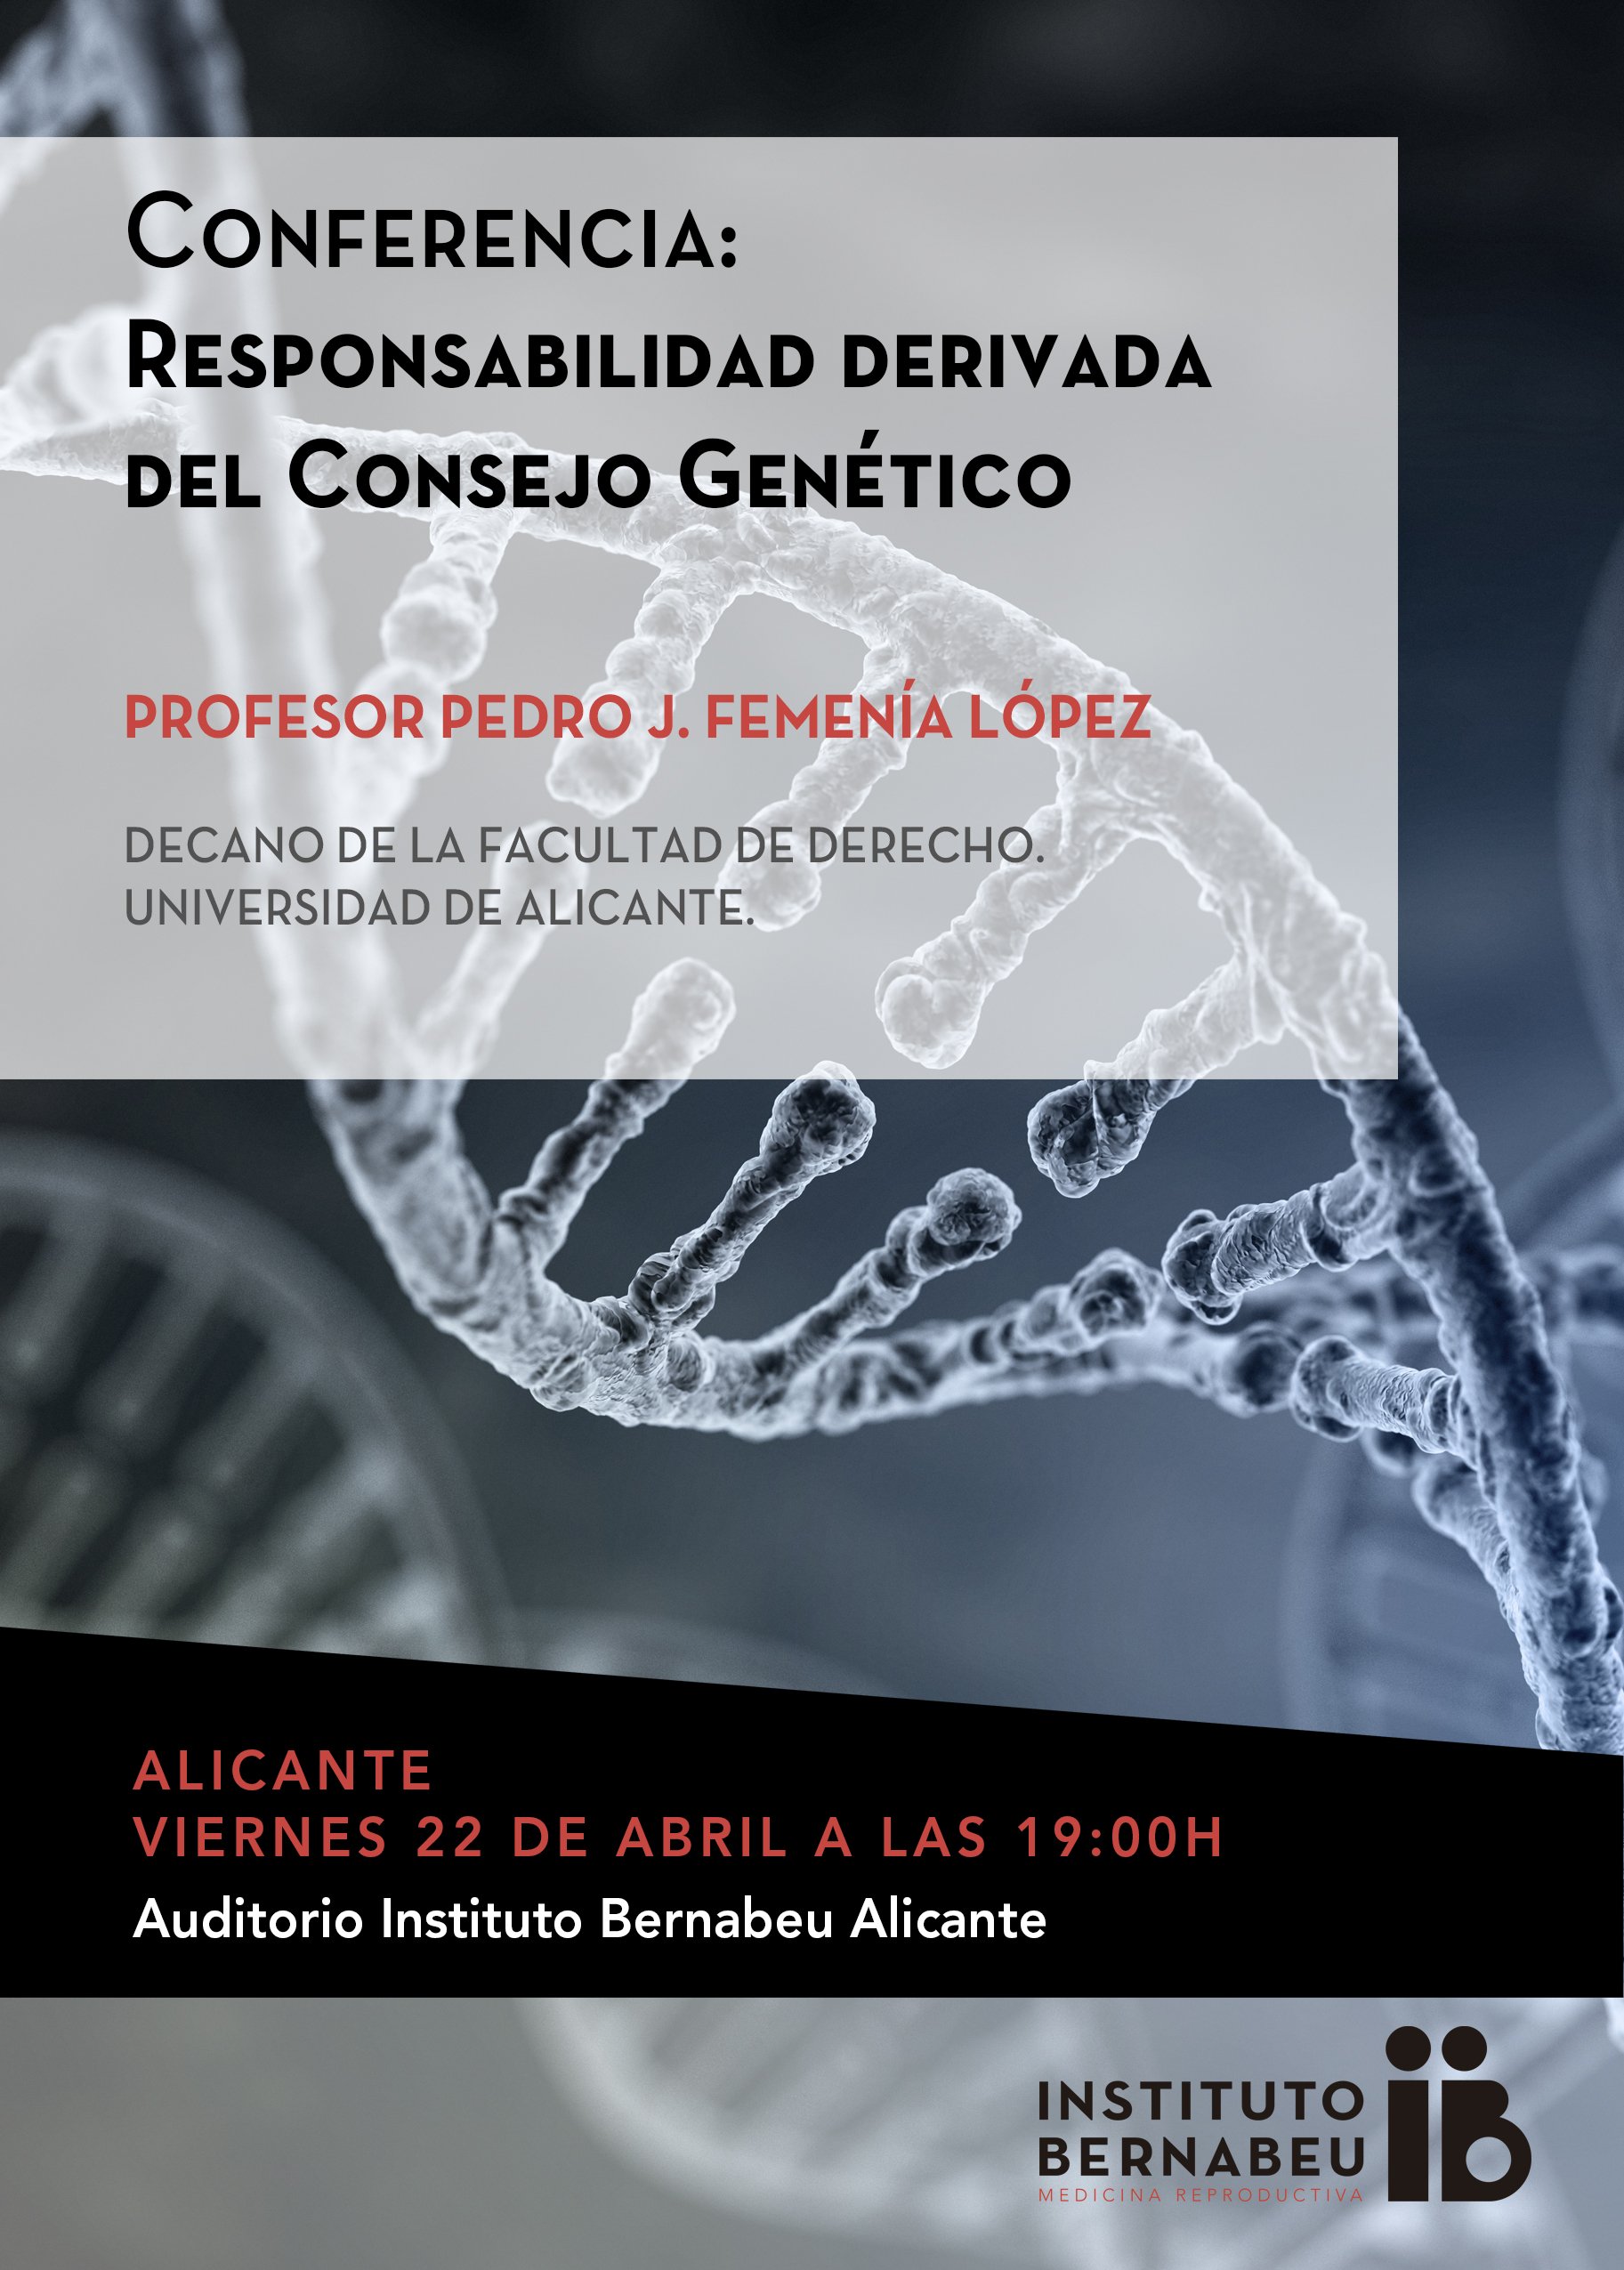 Conferencia: Responsabilidad derivada del consejo genético.